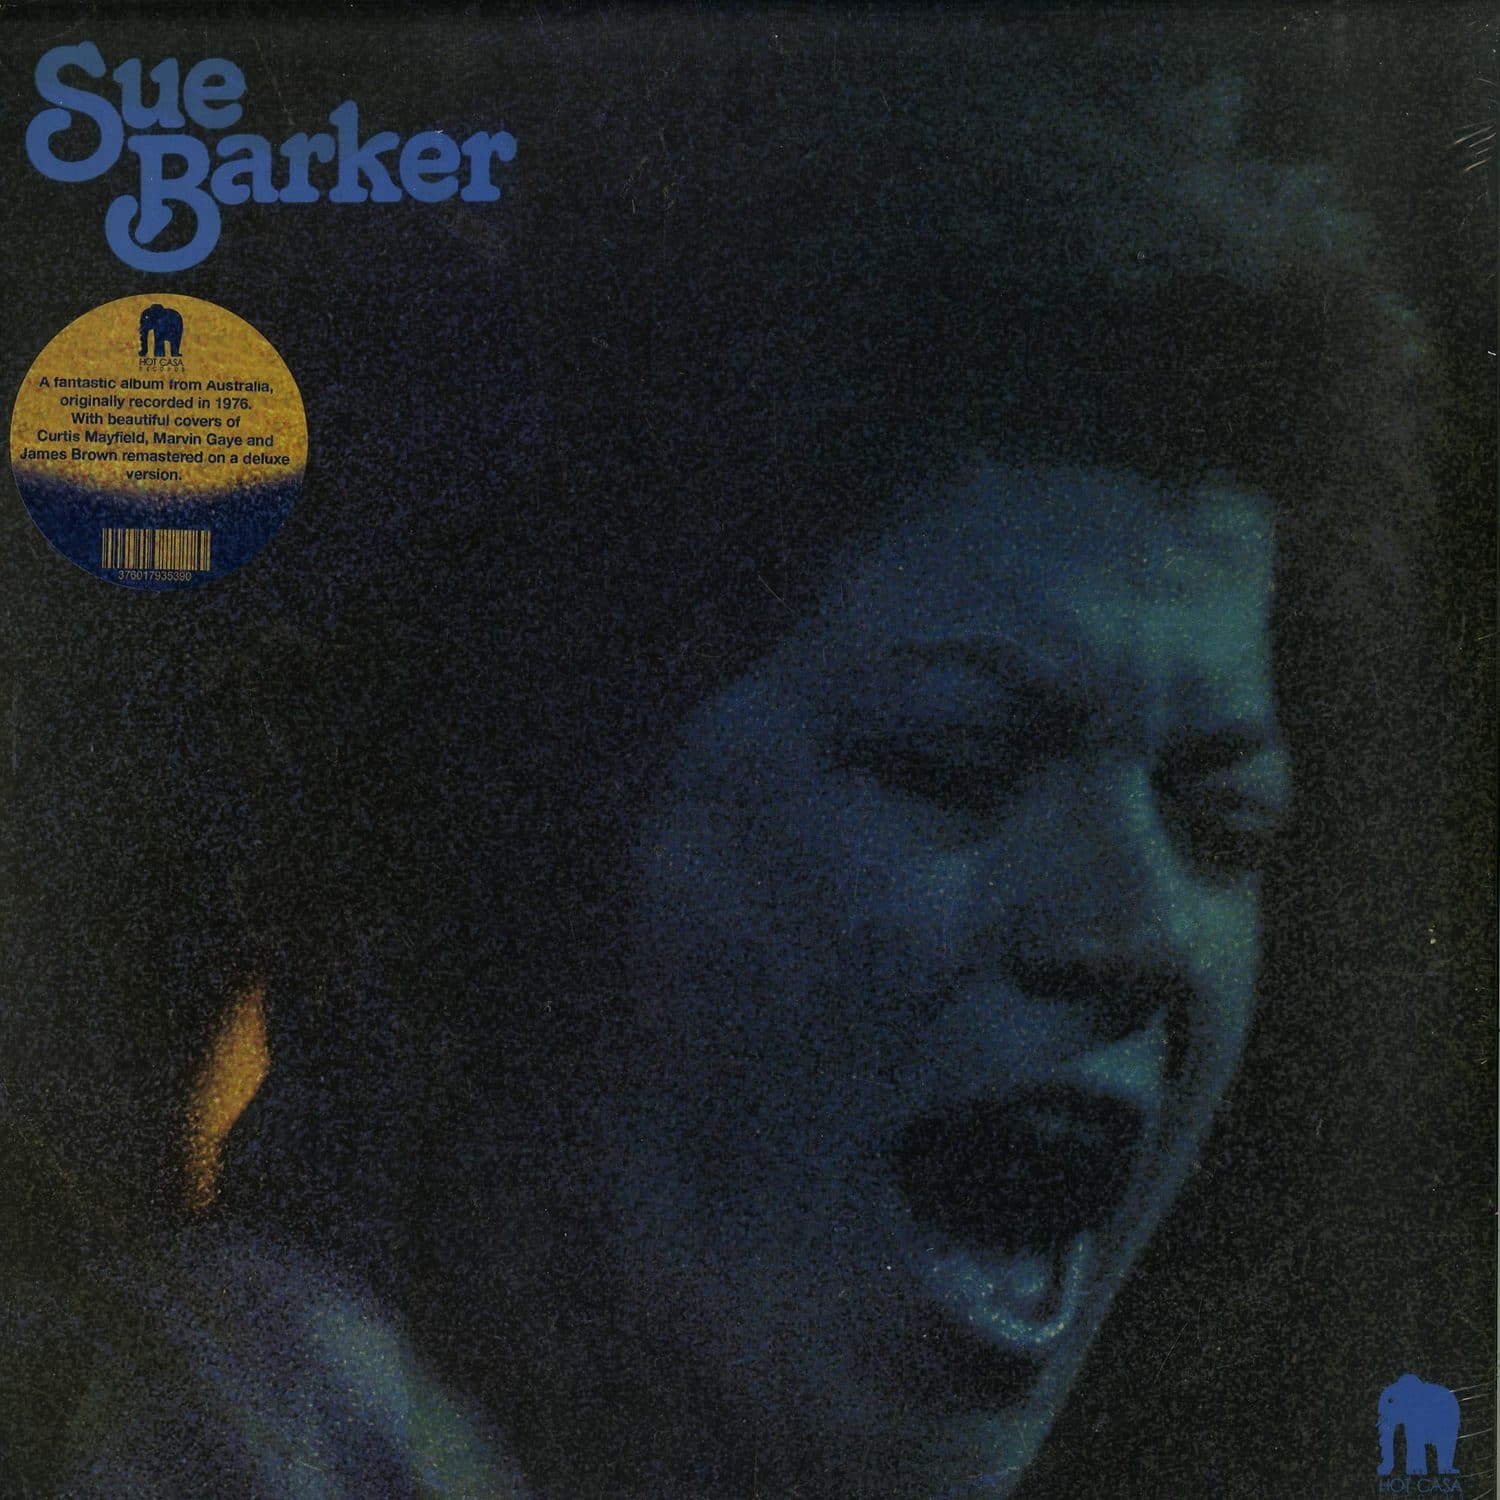 Sue Baker - SUE BAKER 